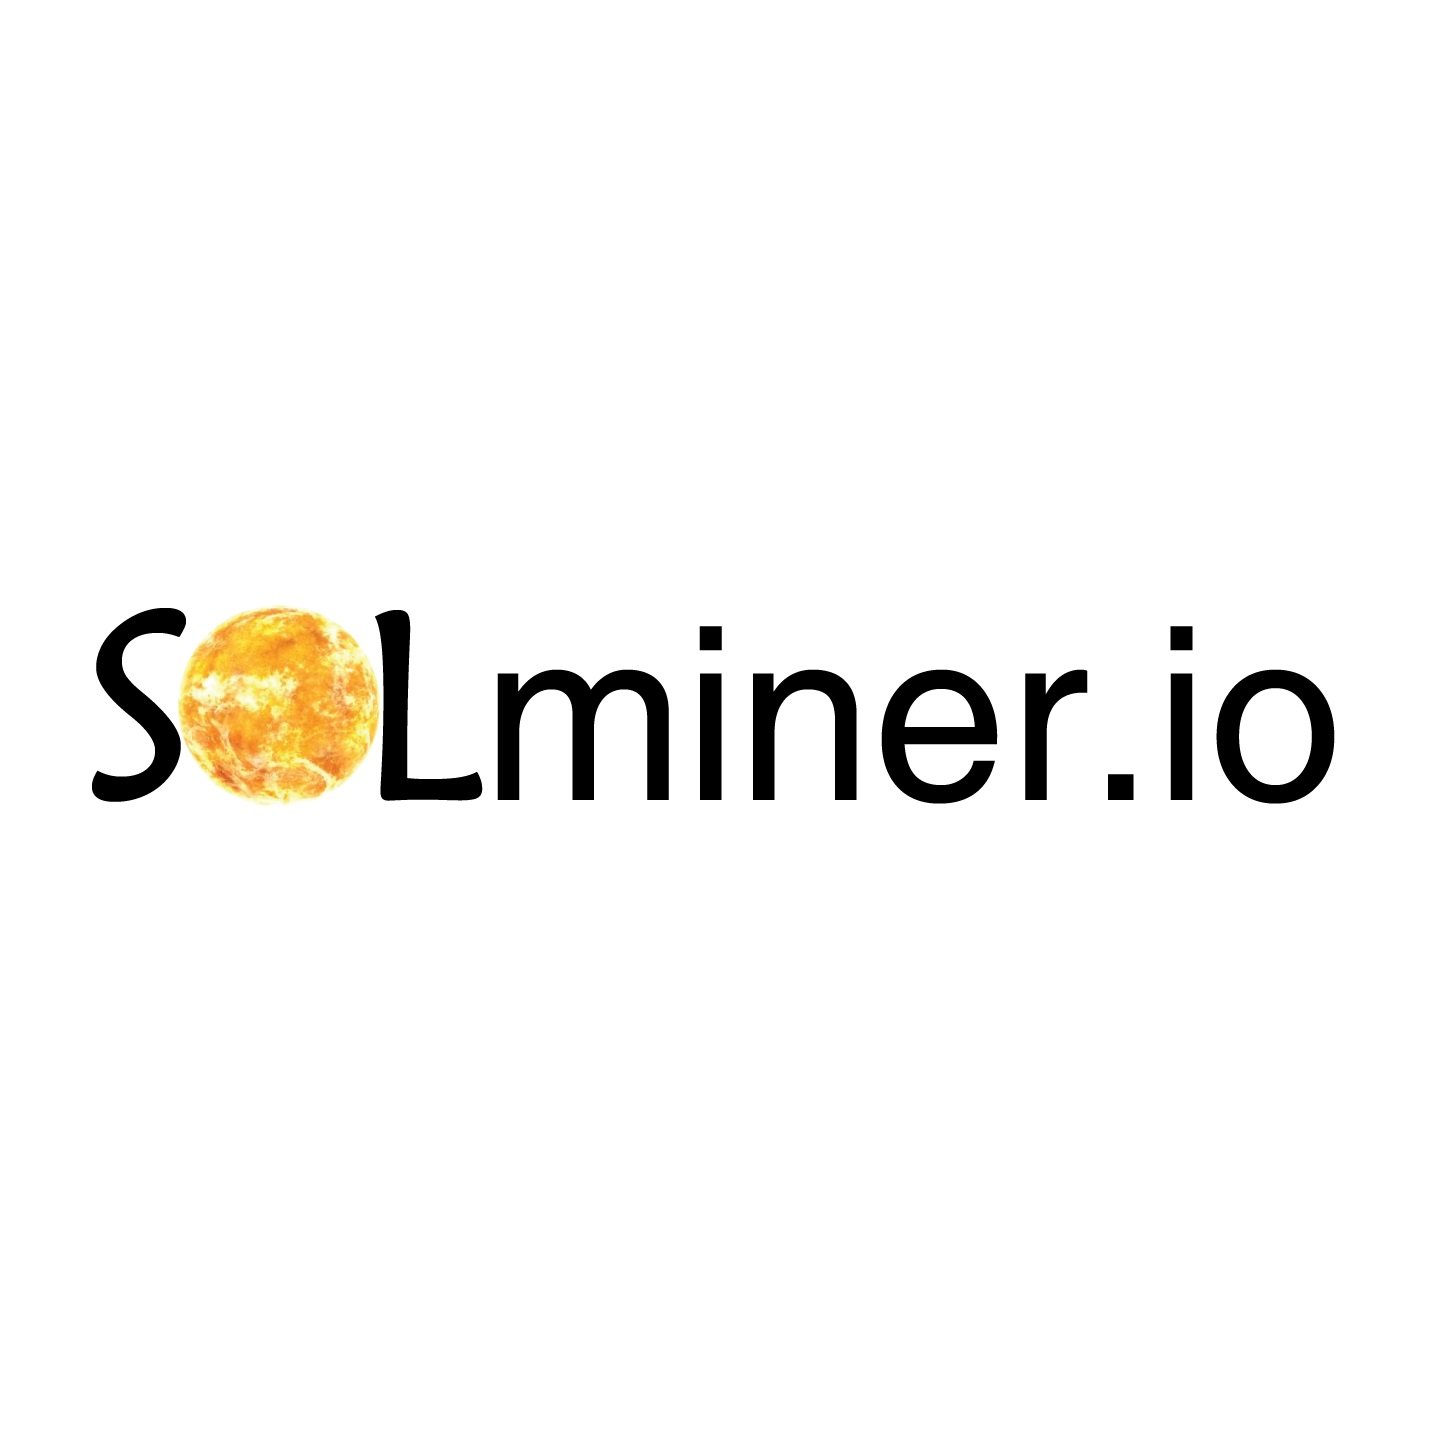 SOLminer.io